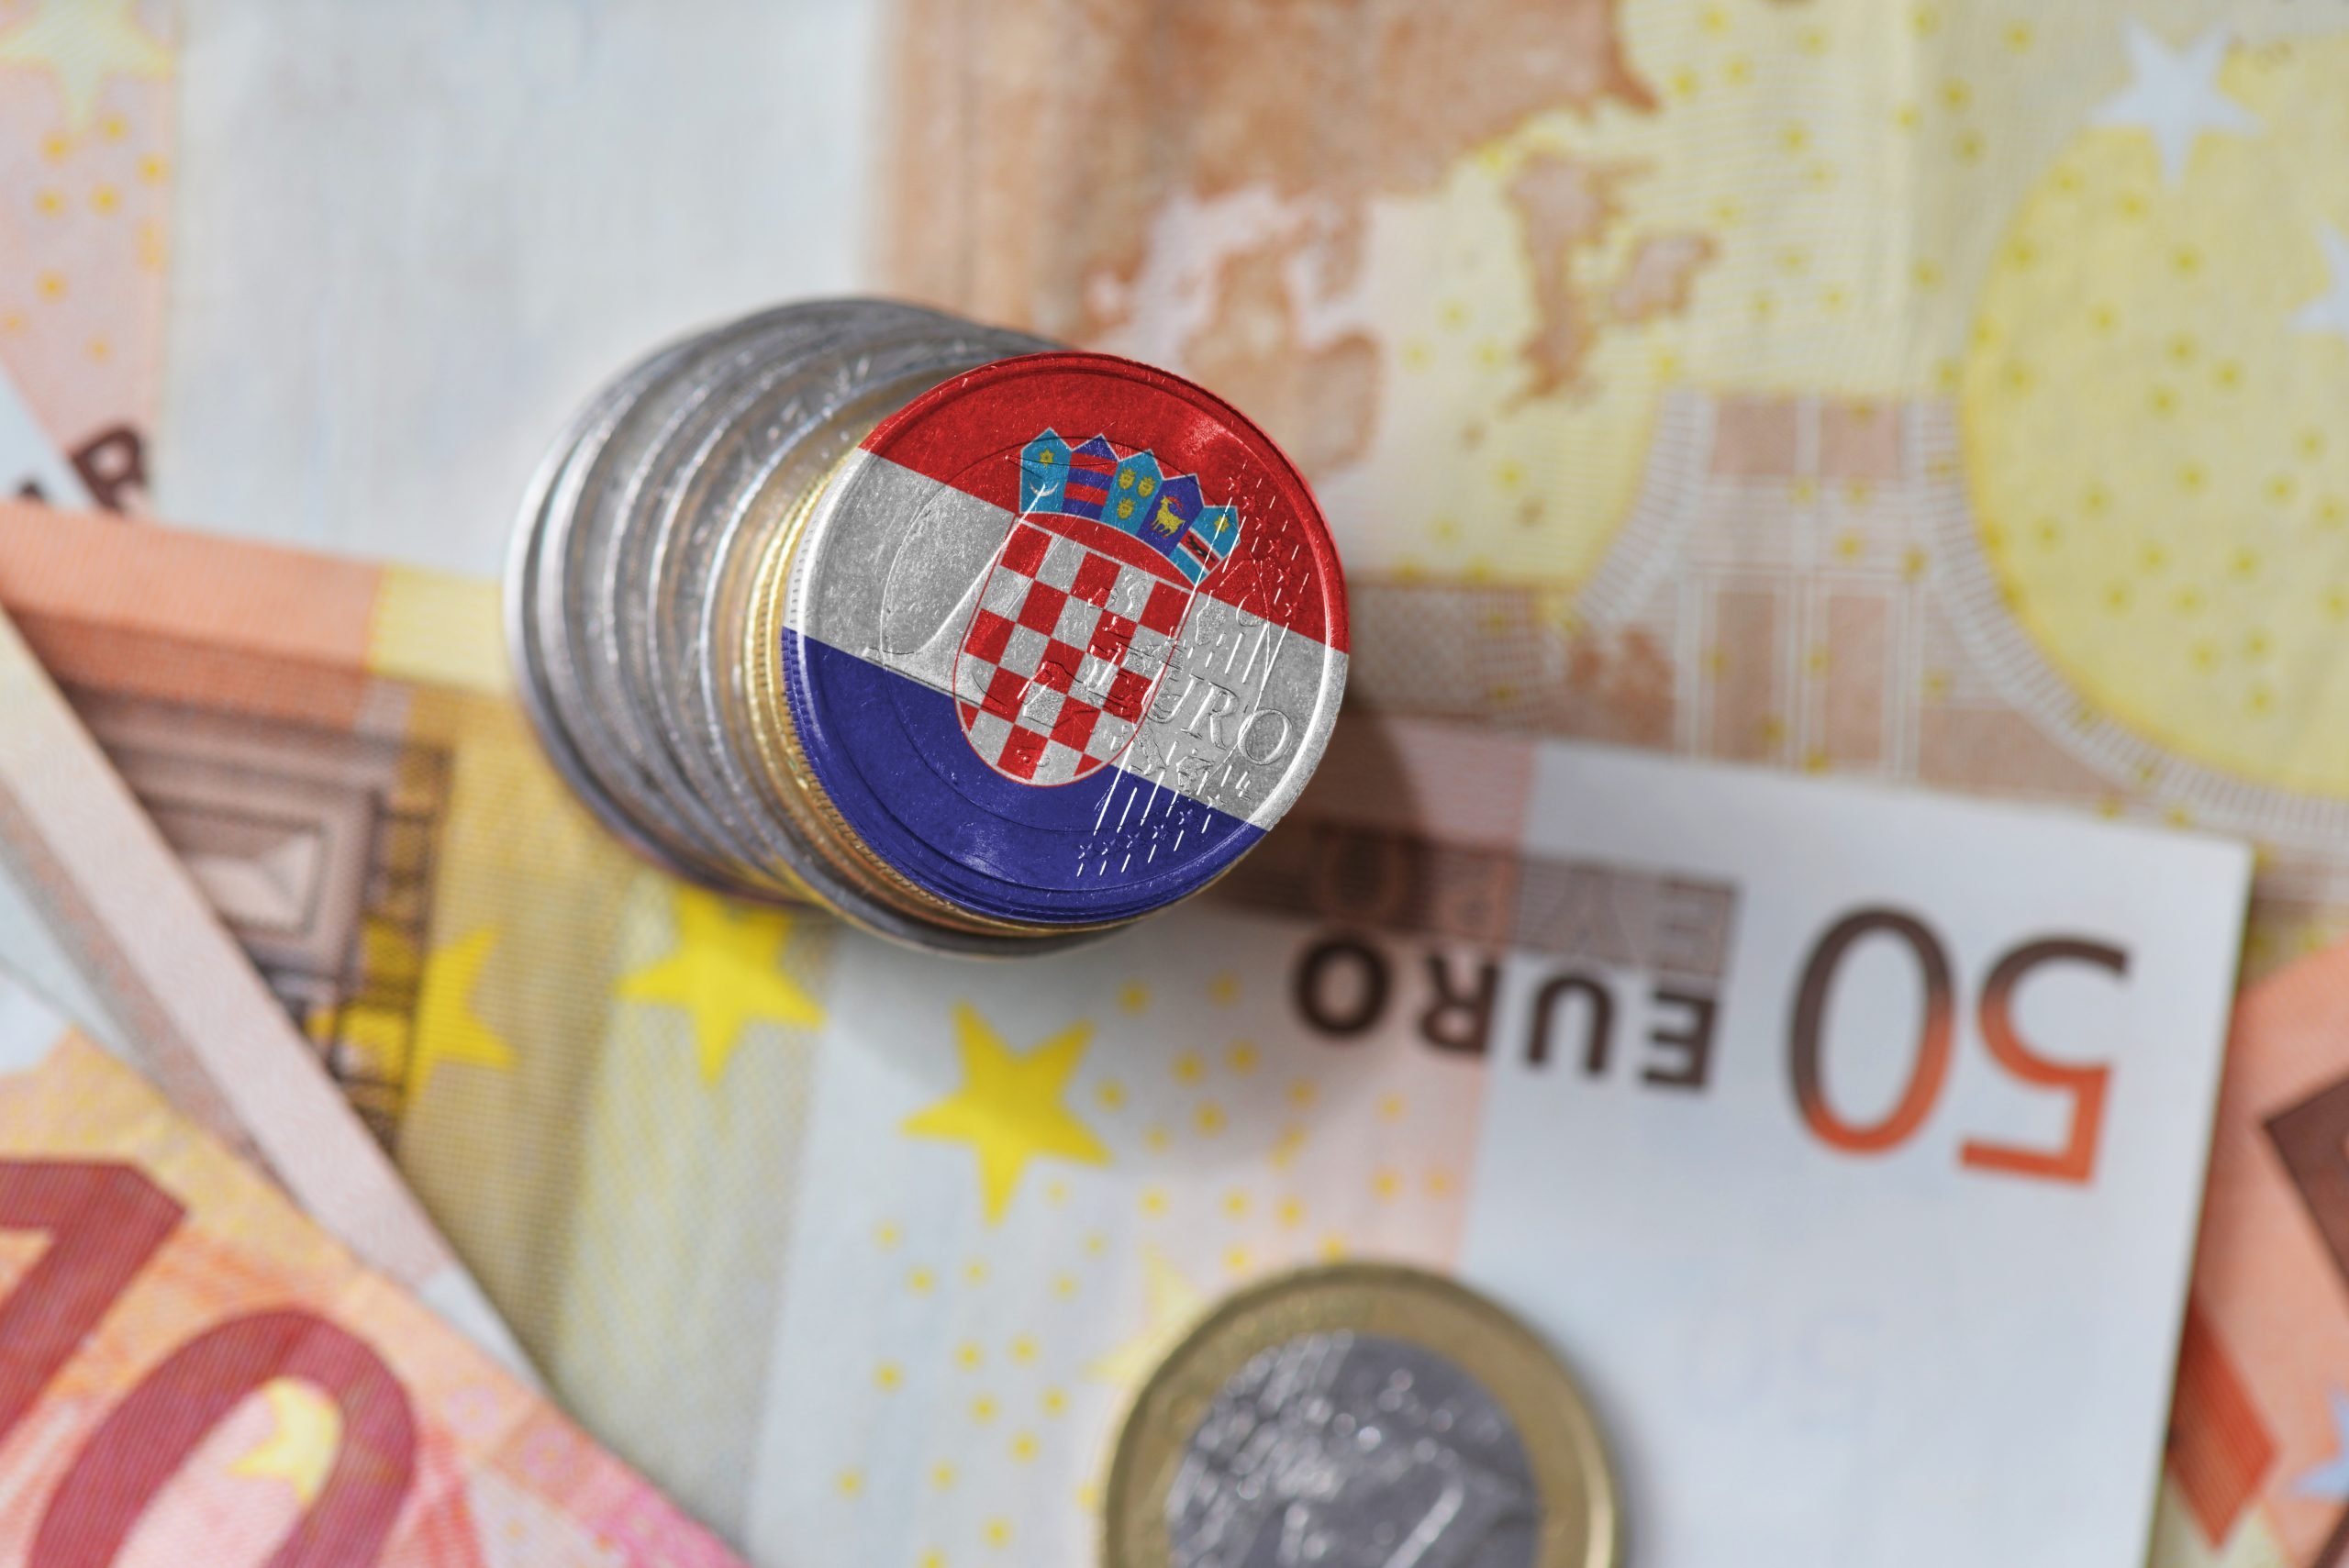  Uniunea Europeană a aprobat aderarea Croaţei la zona euro la 1 ianuarie 2023